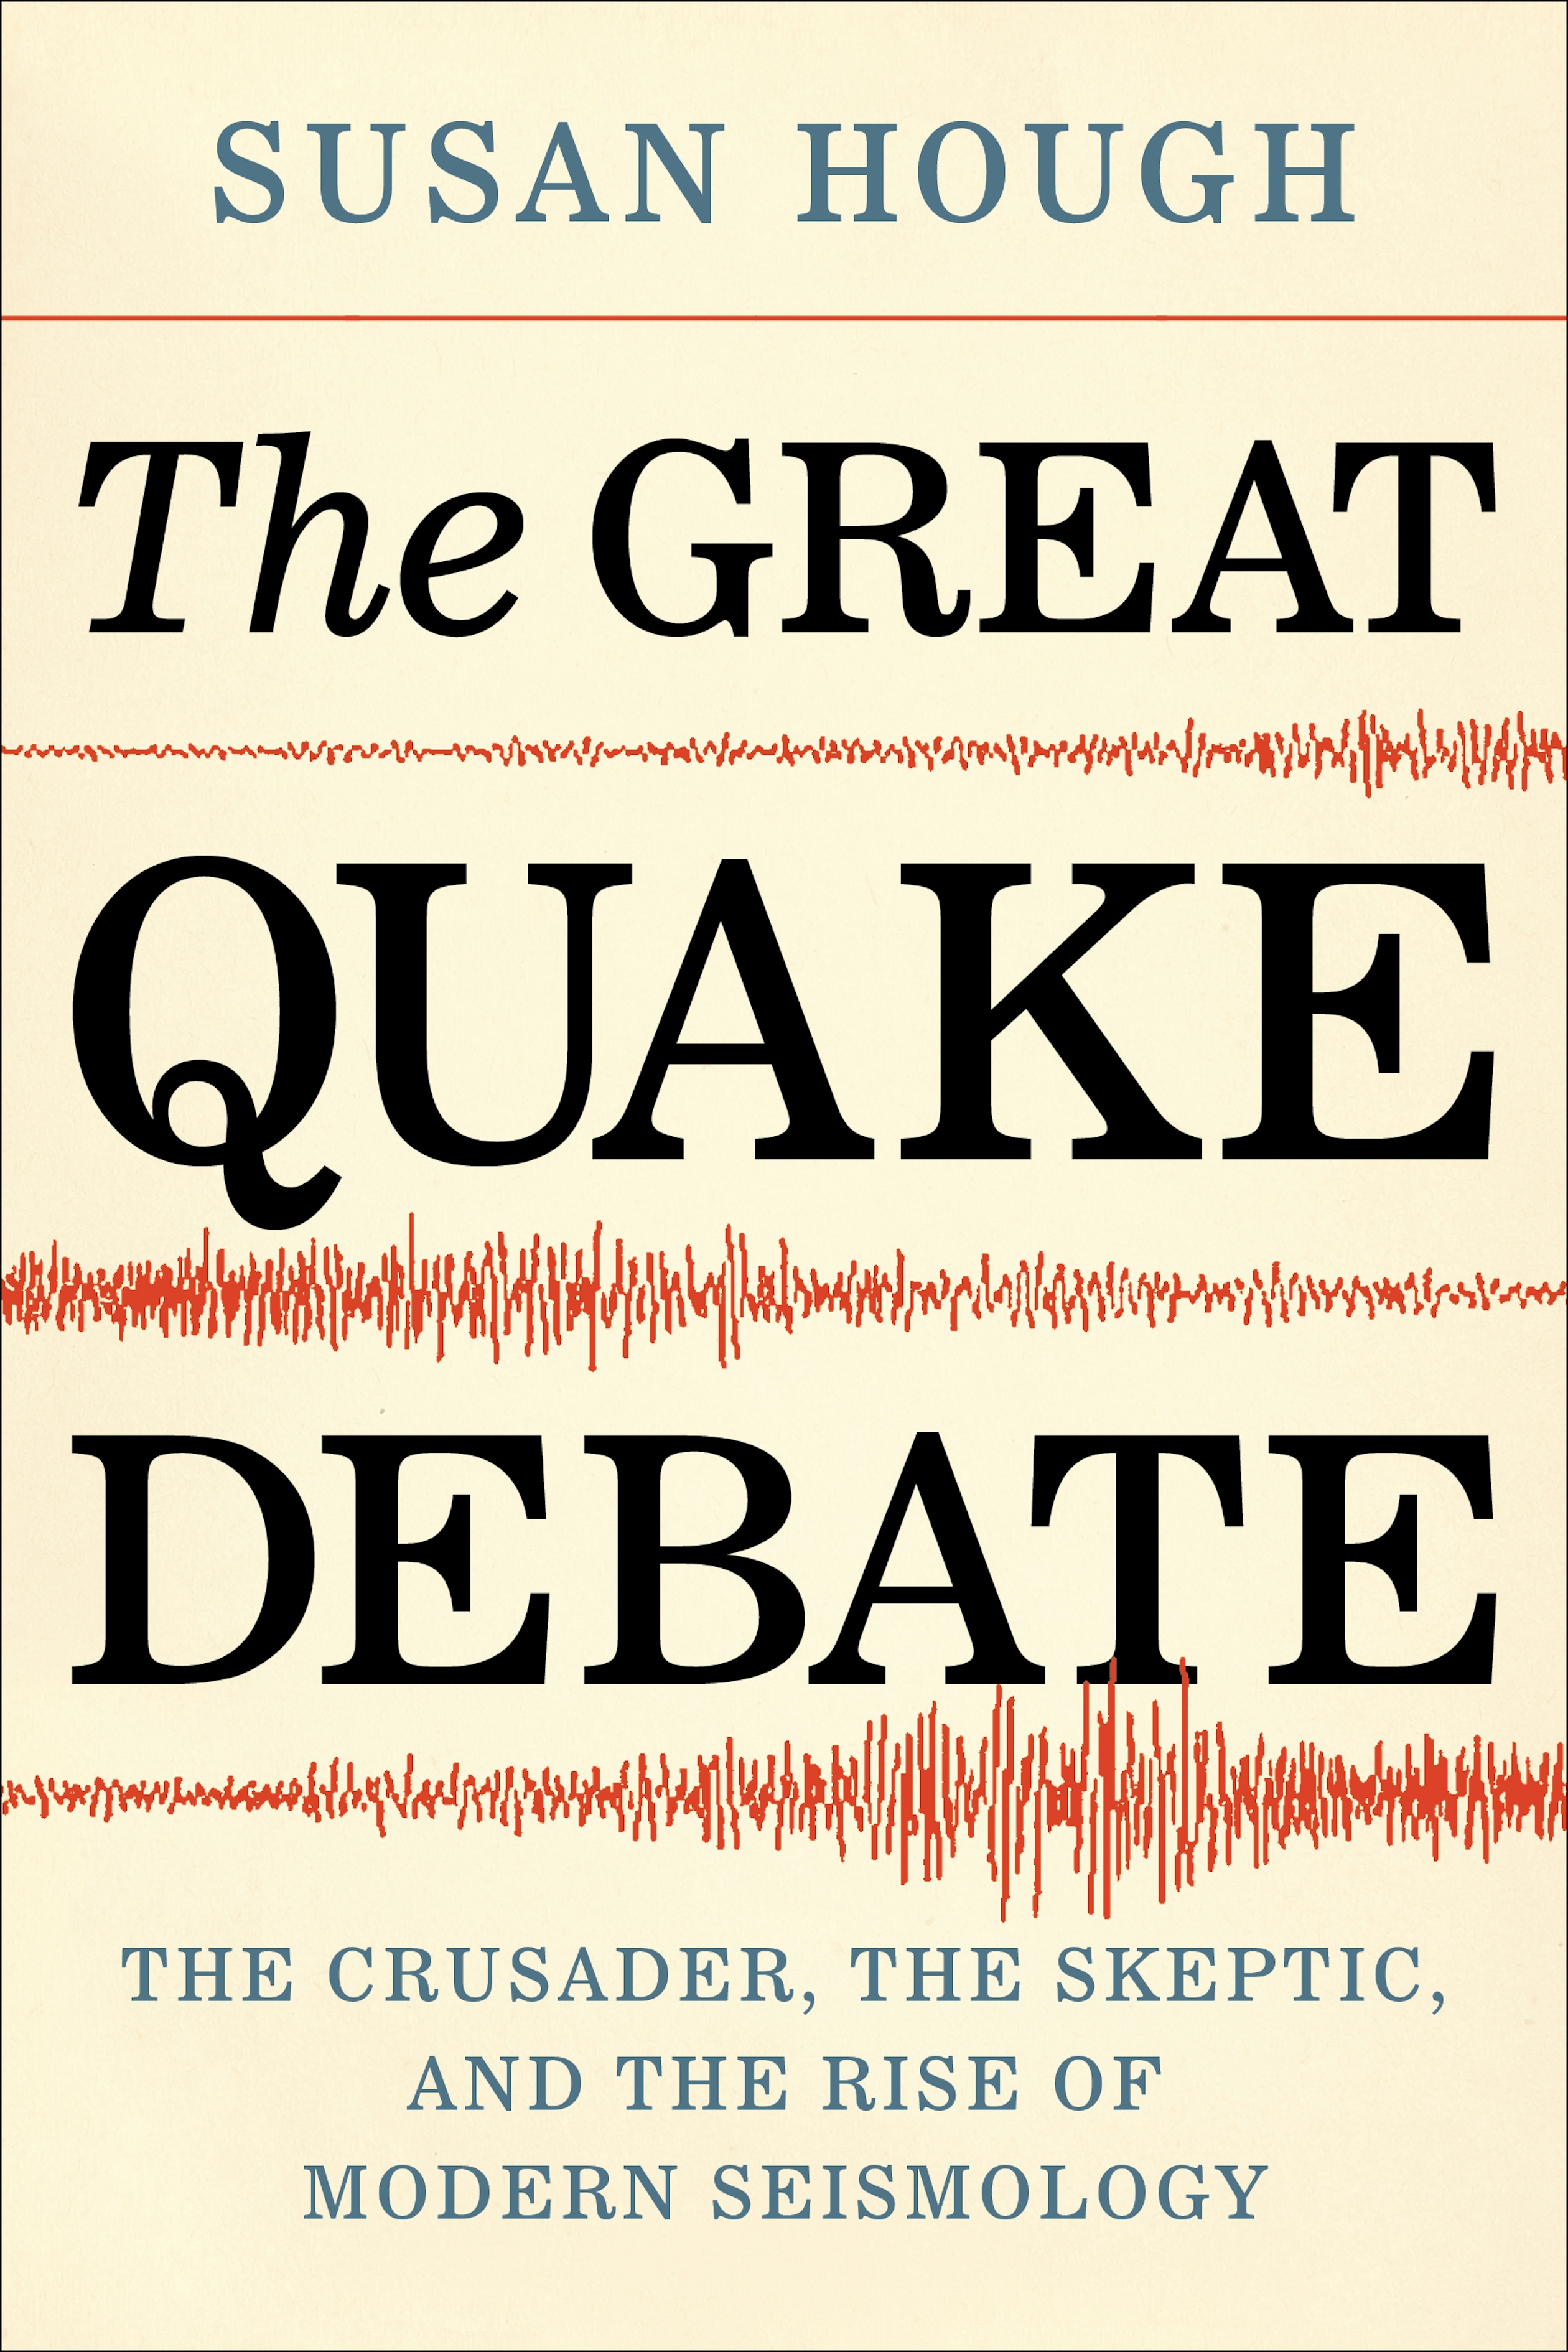 The Great Quake Debate